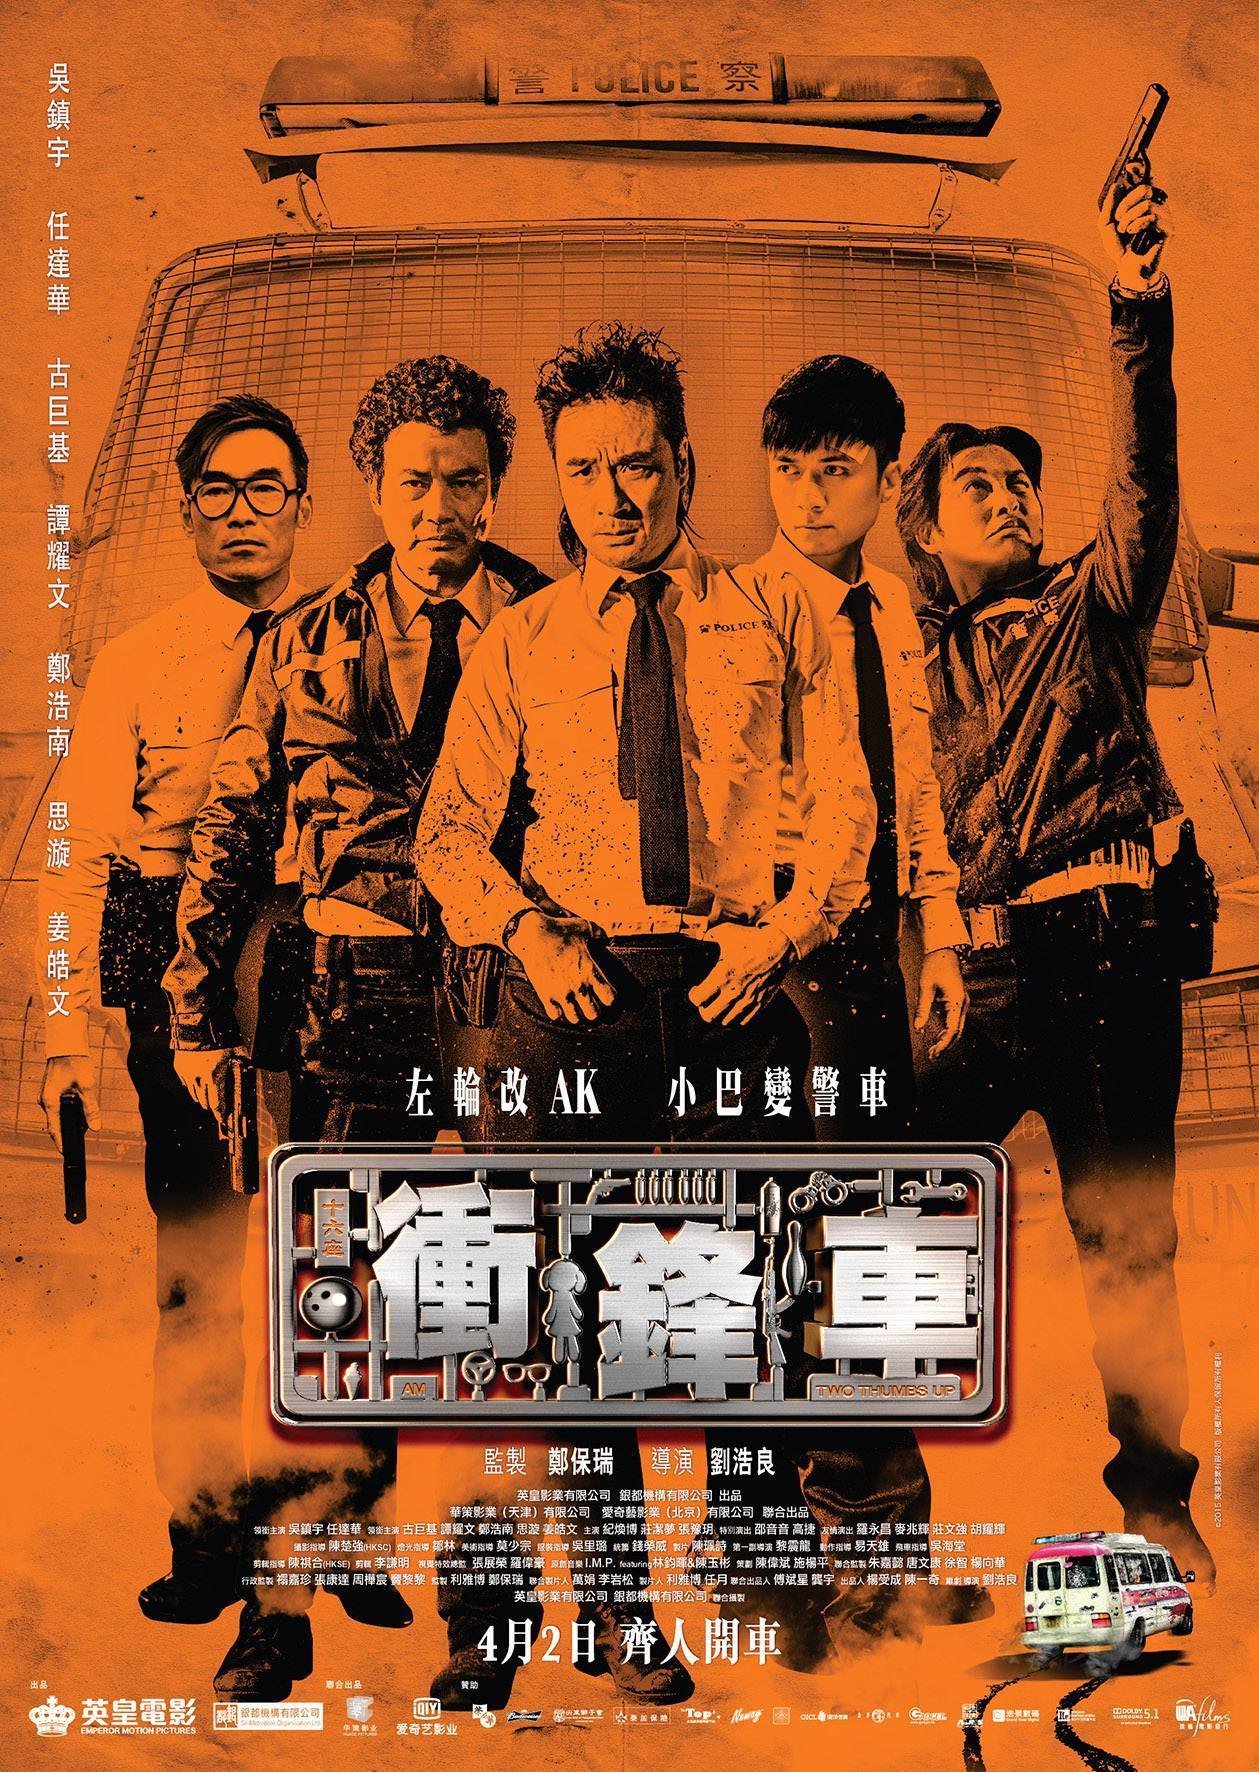 L'affiche du film Chung fung che